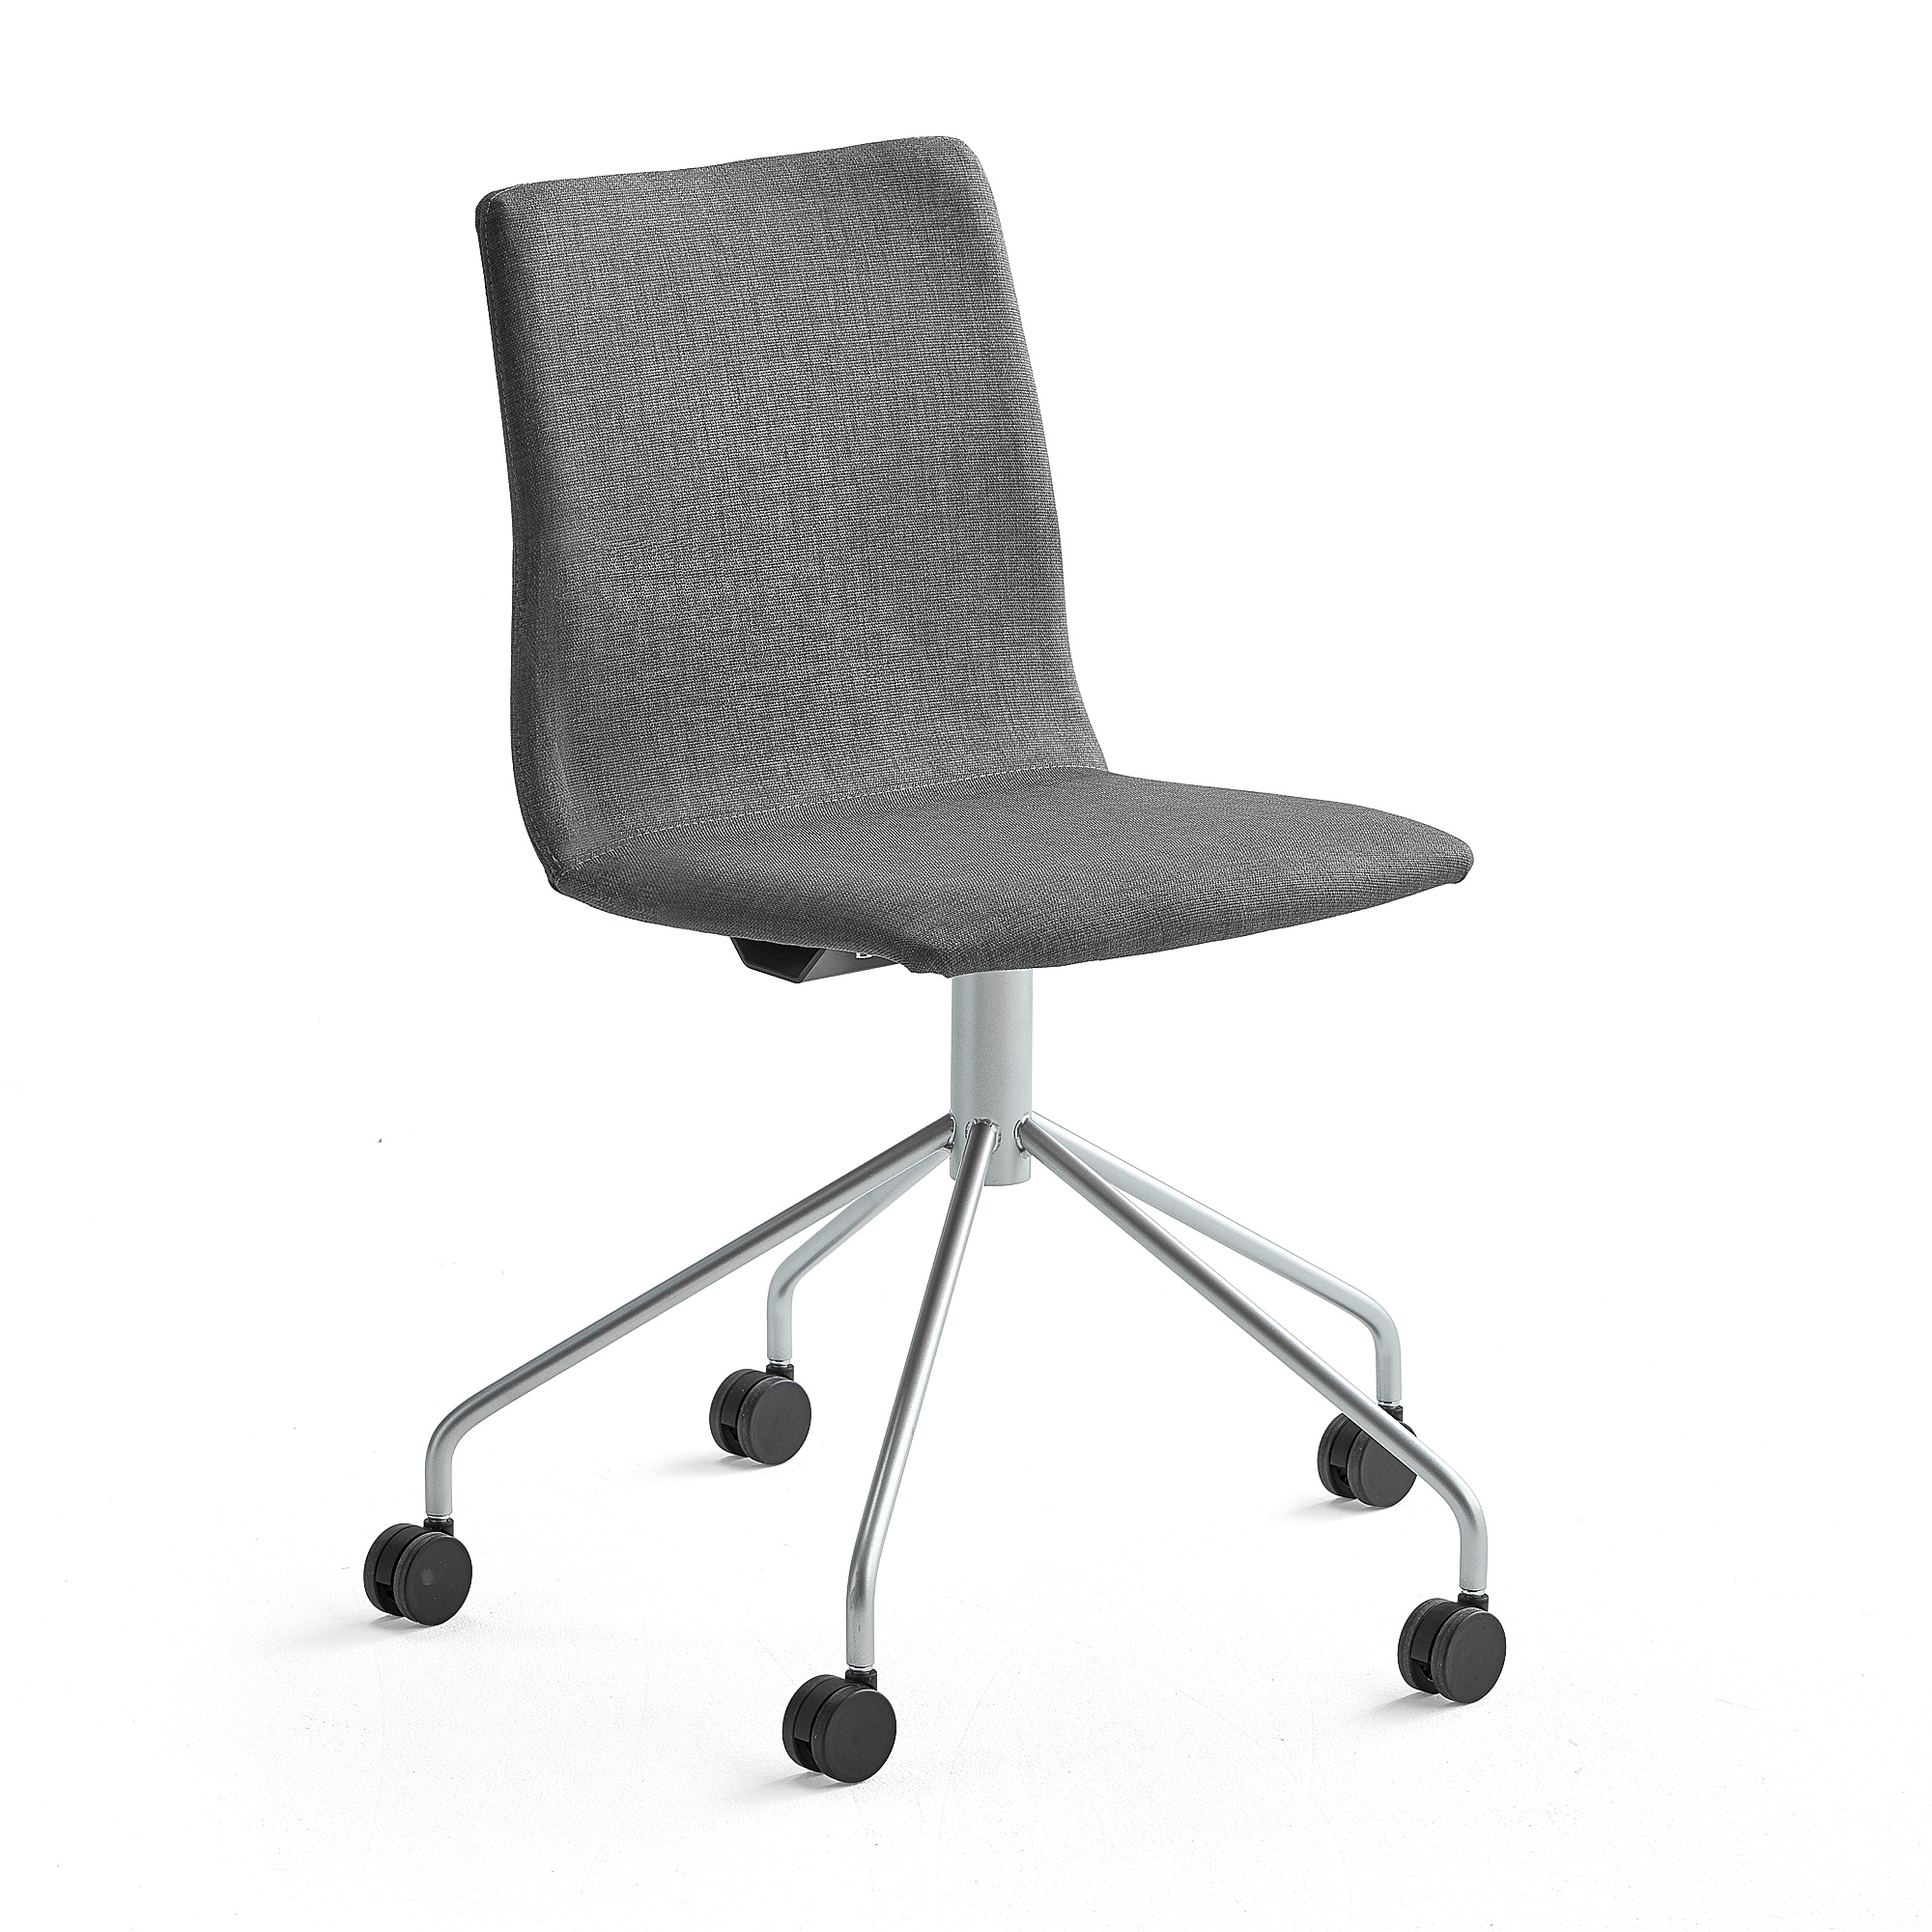 Konferenčná stolička OTTAWA, s kolieskami, šedá